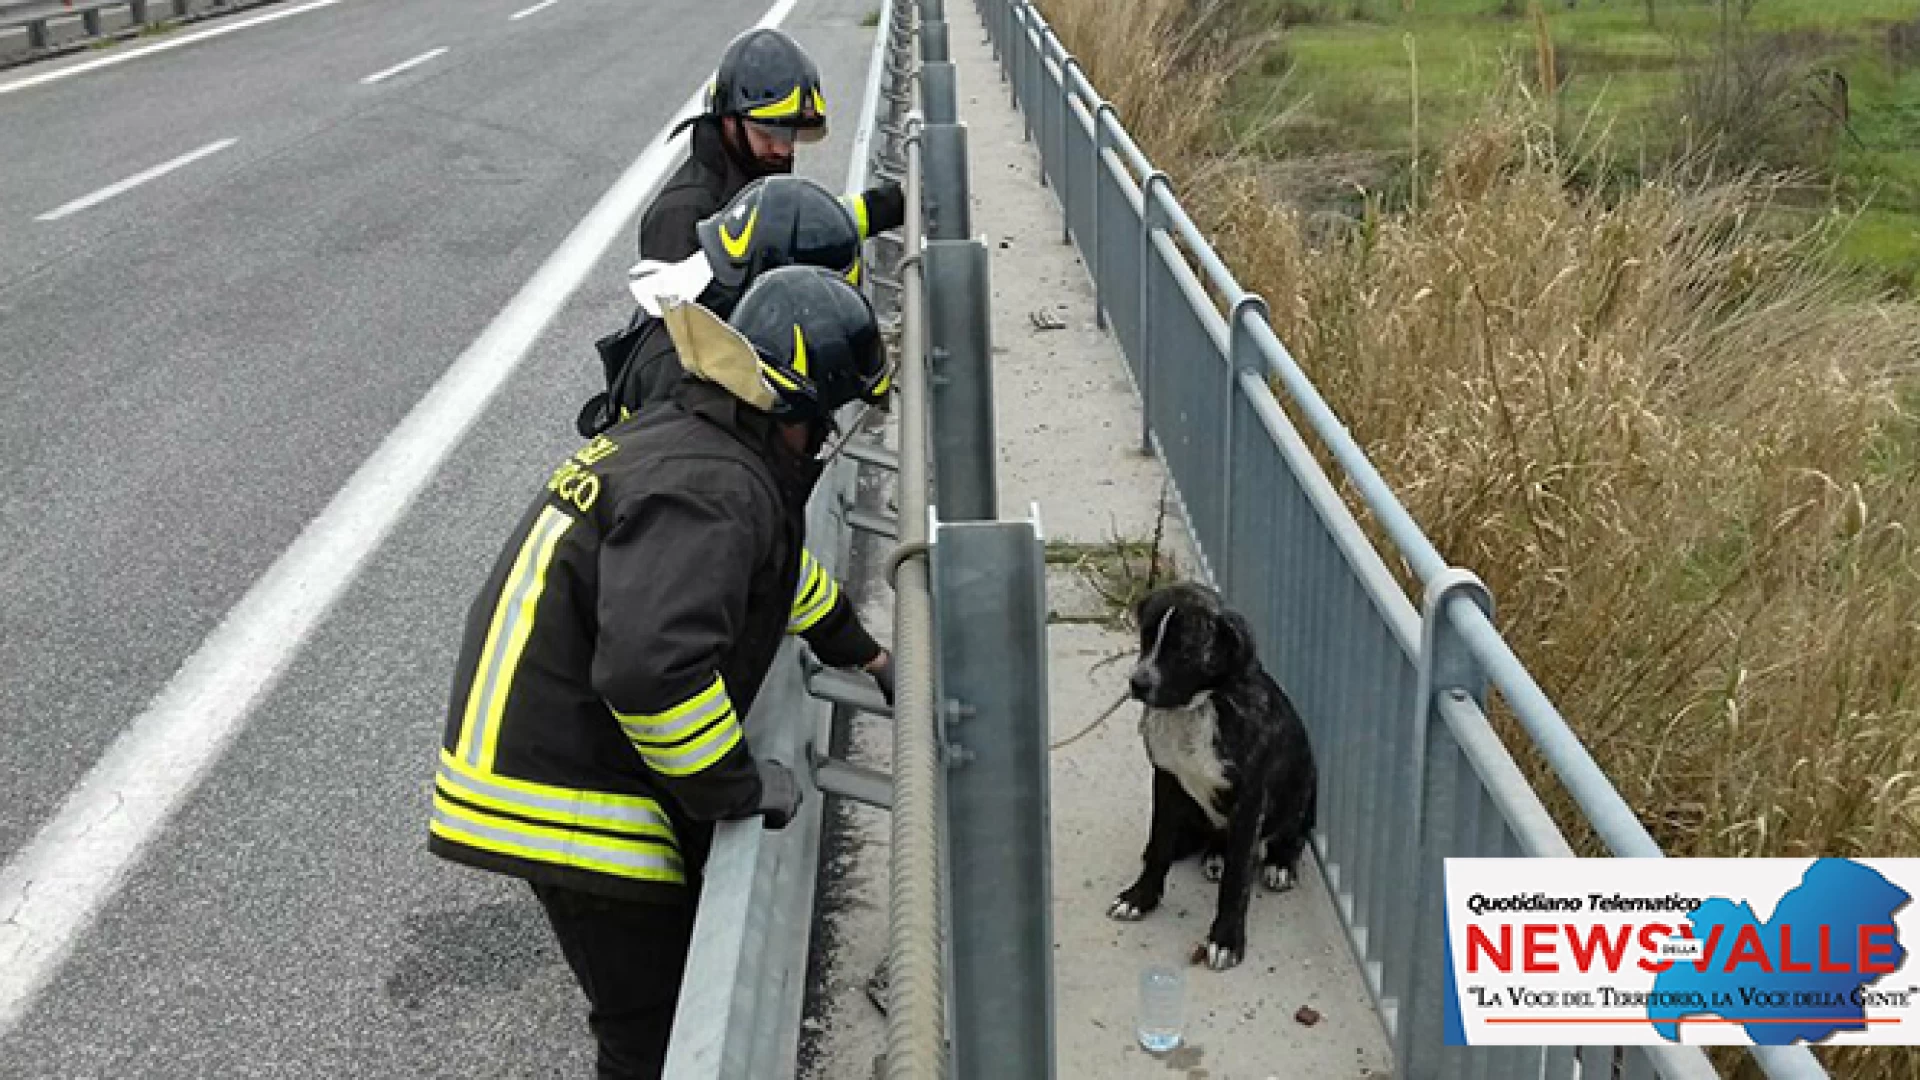 Sesto Campano: cagnolino abbandonato sulla variante salvato dai Vigili del Fuoco Volontari di Venafro. Sul posto anche i Carabinieri Forestali e la Polizia Municipale.